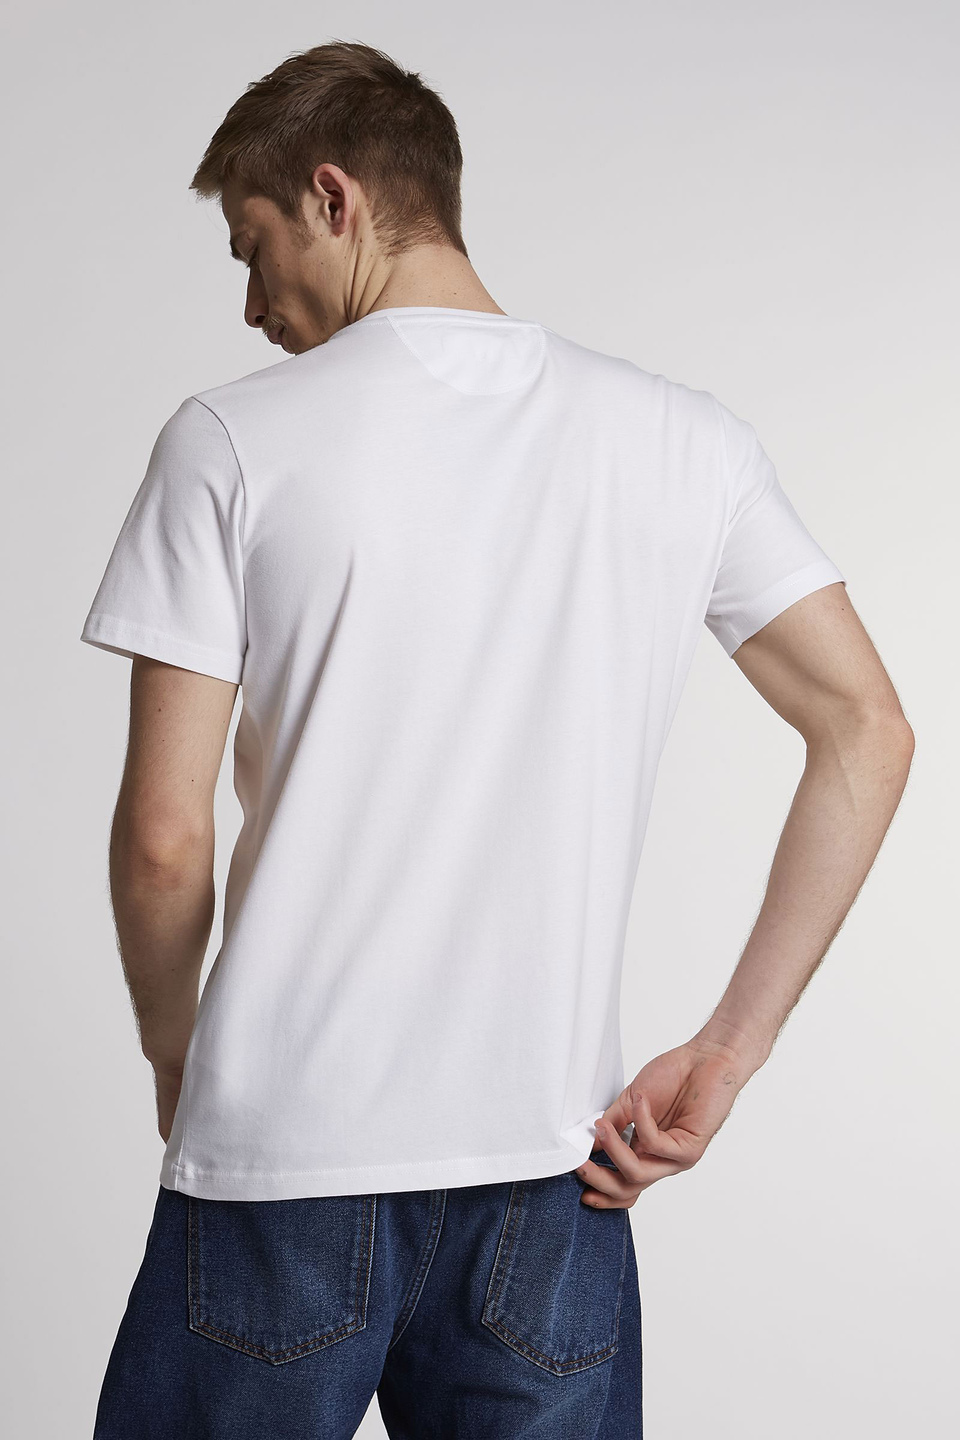 Camiseta de hombre de manga corta de algodón, corte regular | La Martina - Official Online Shop